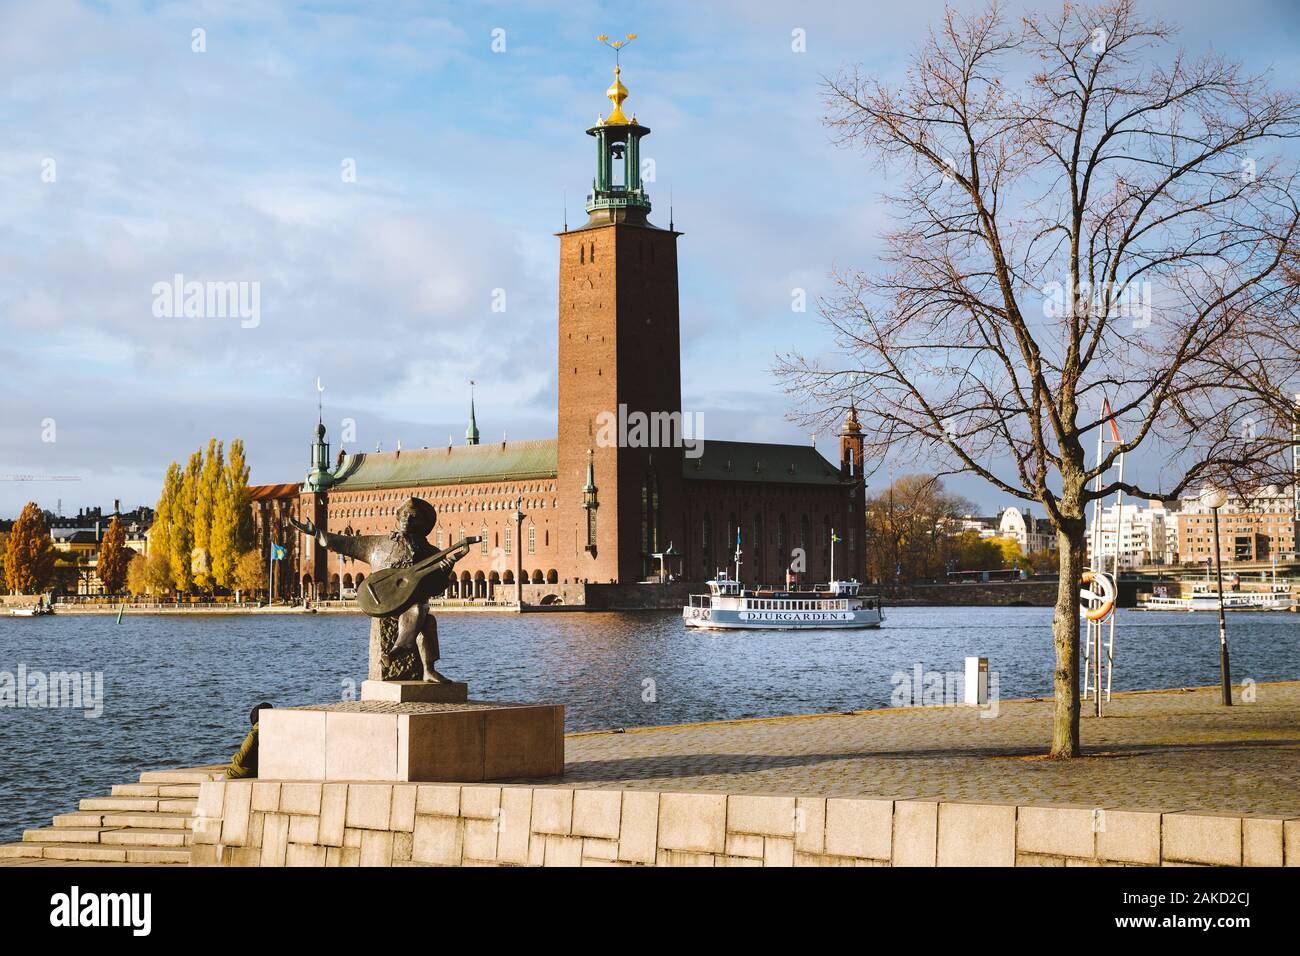 Vista panorámica del famoso ayuntamiento de Estocolmo con Djurgården ferry y Evert Taube estatua, Estocolmo, Suecia, Escandinavia Foto de stock